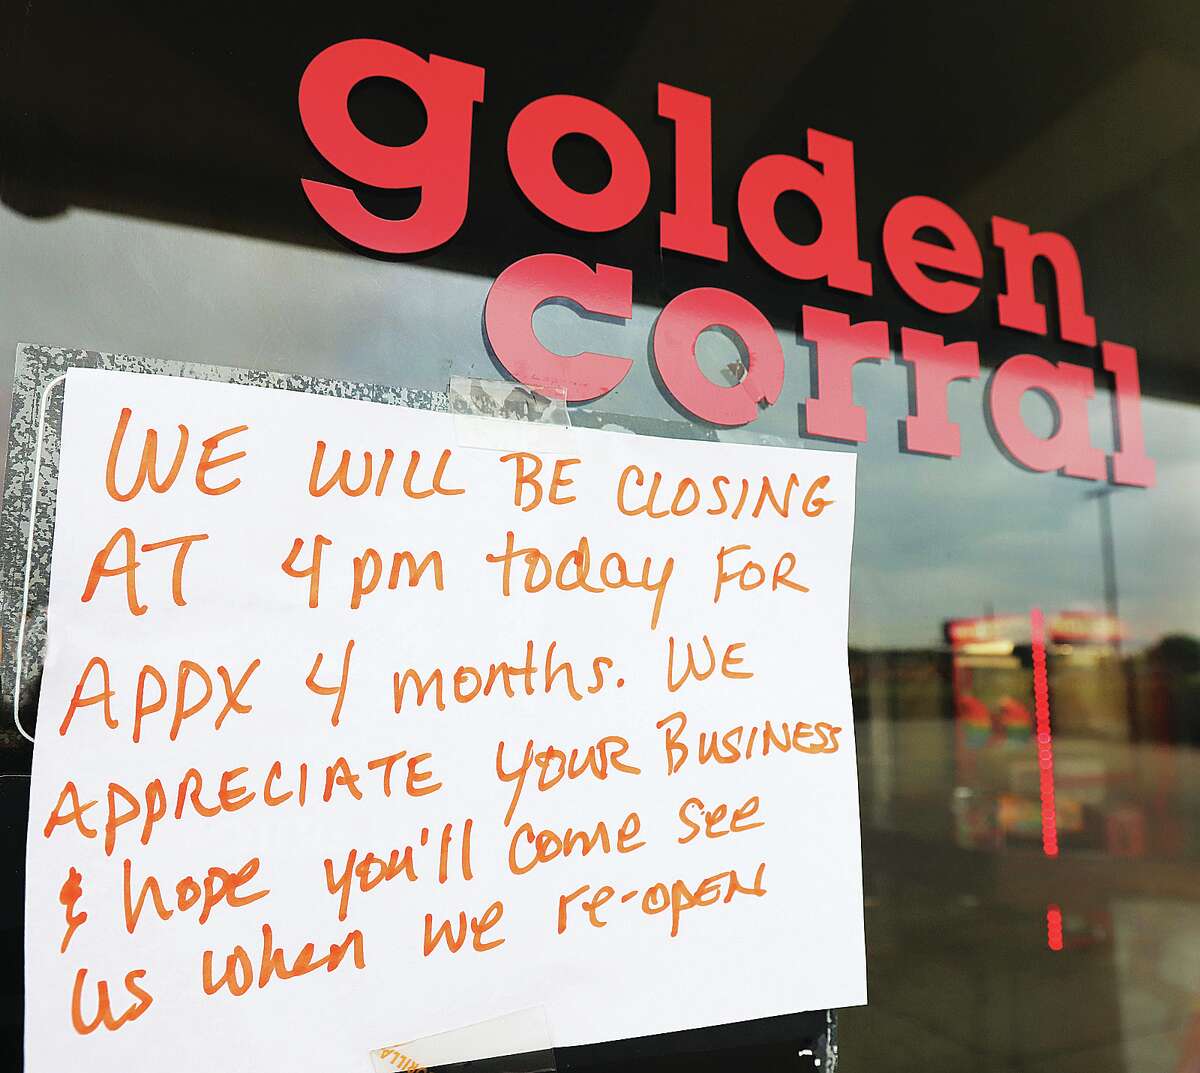 Golden Corral closed in Alton